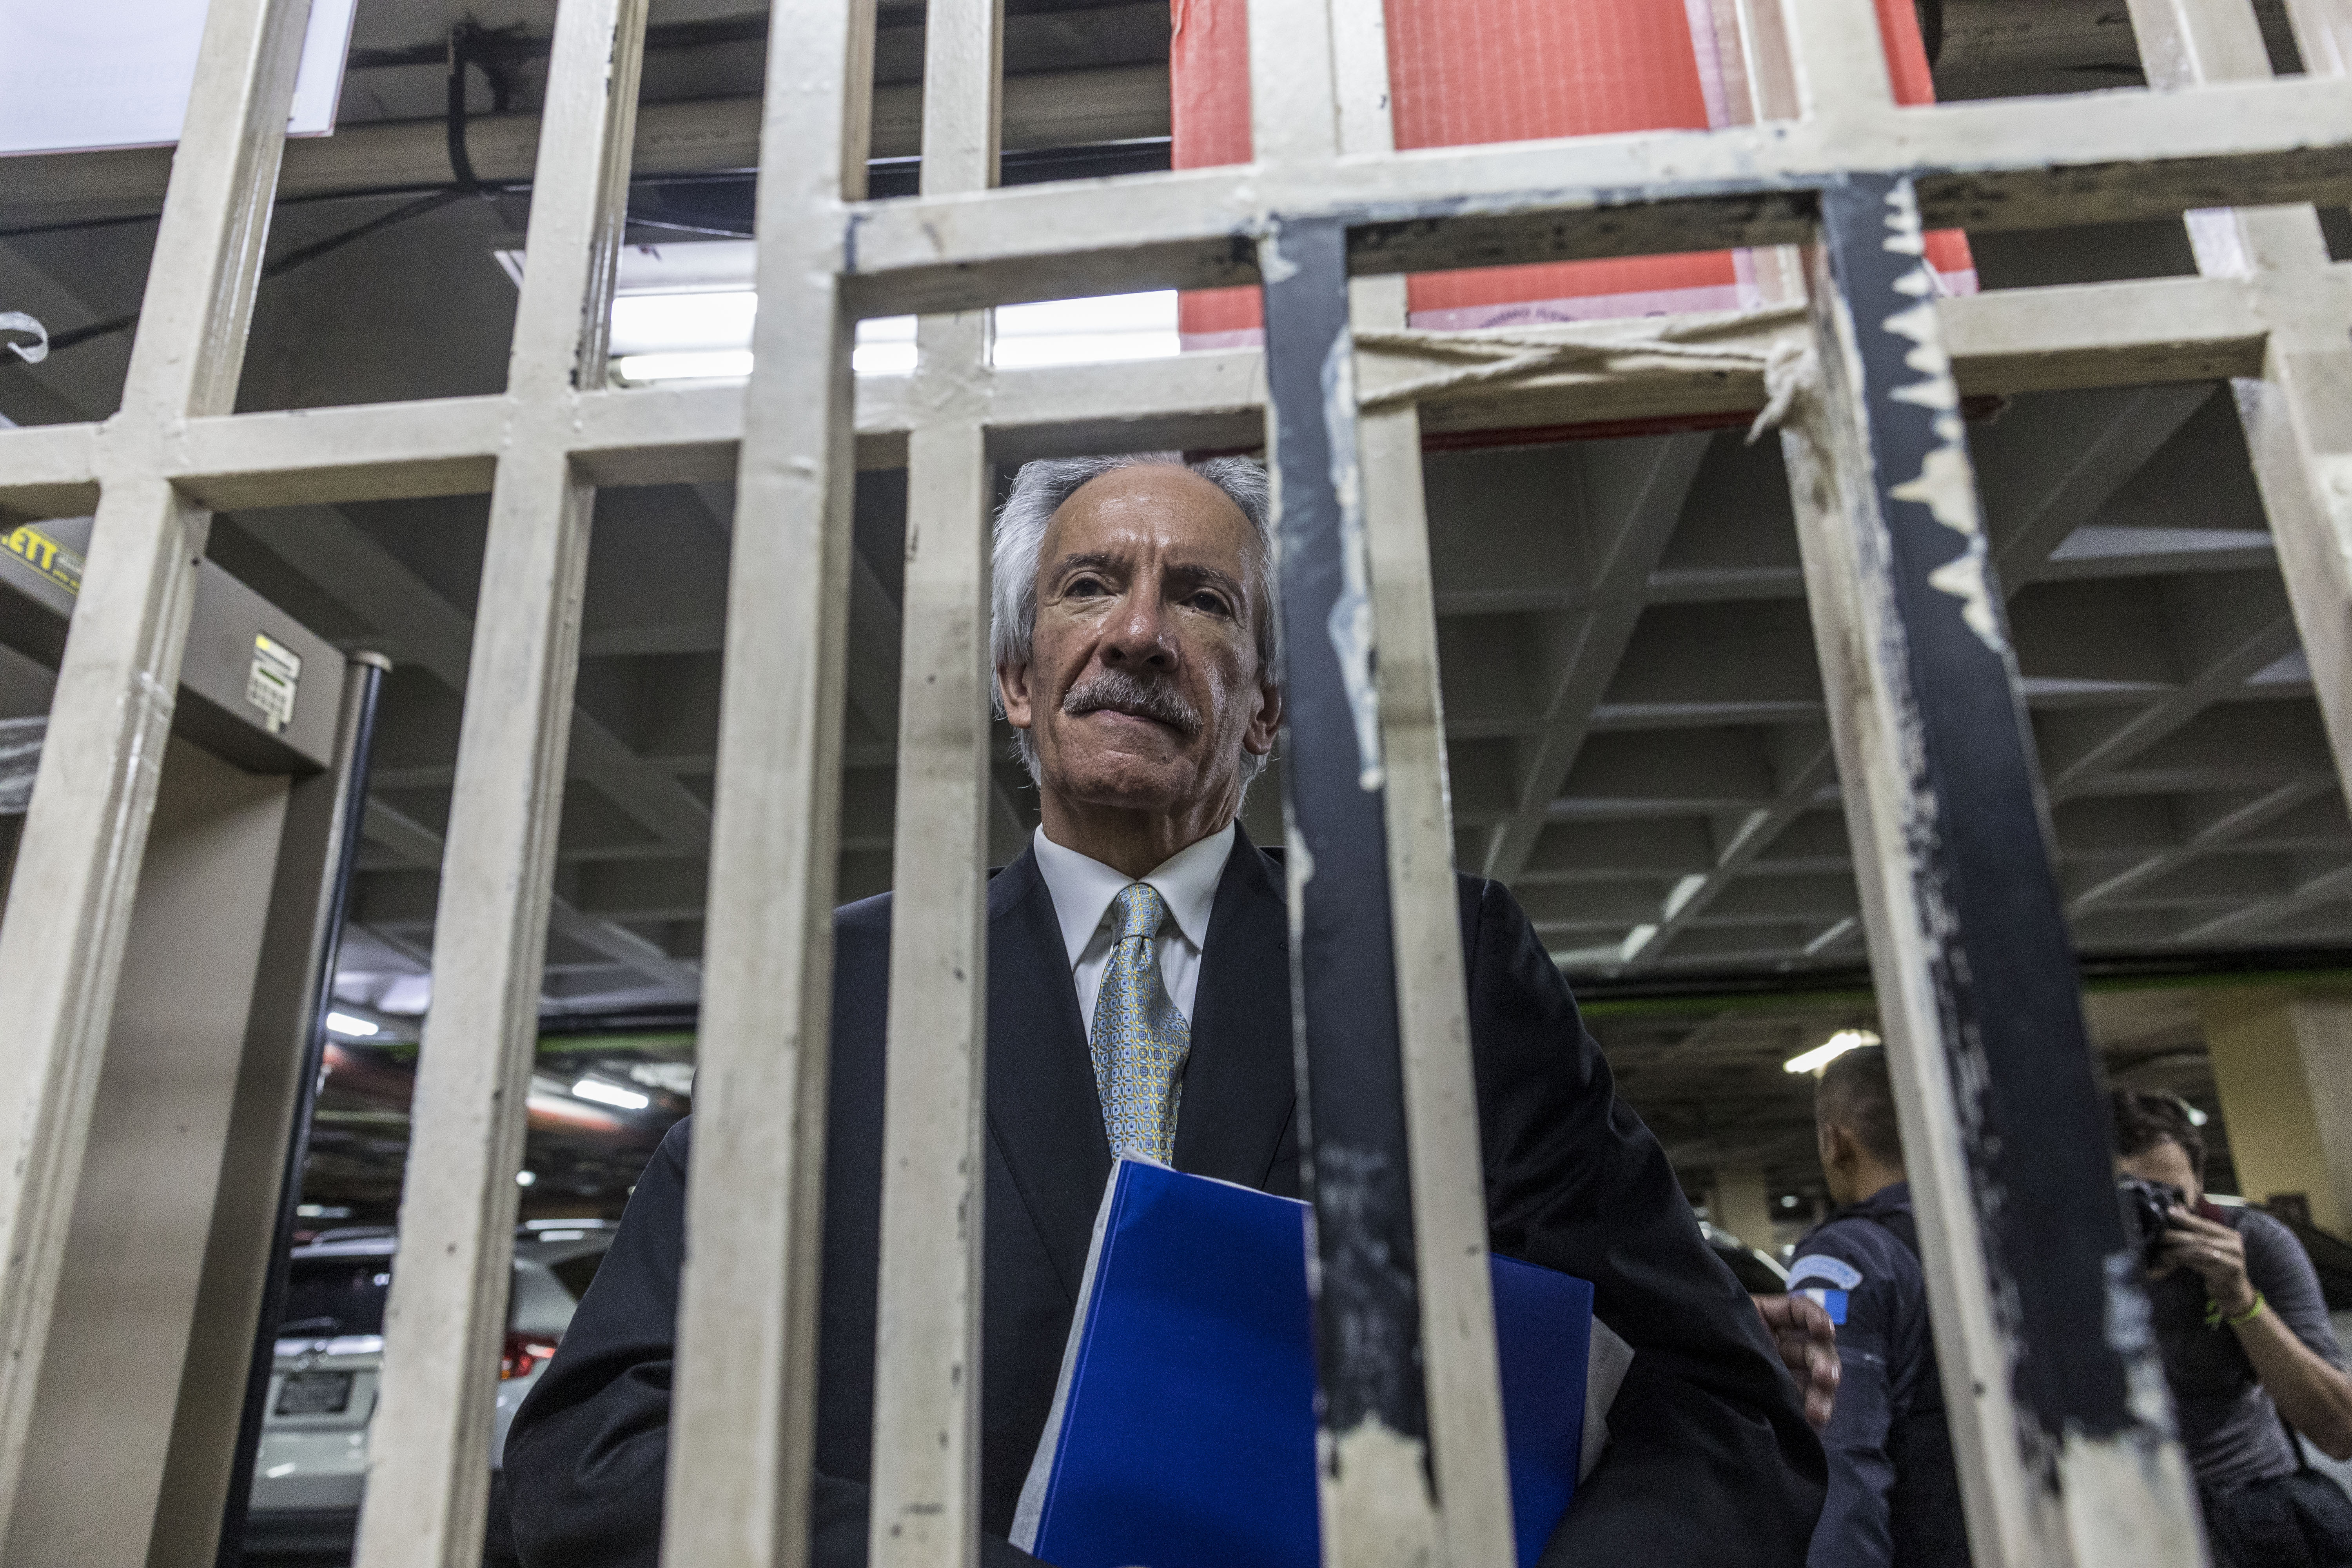 Este miércoles se dicta sentencia en el caso contra José Rubén Zamora, el Ministerio Público pide por tres delitos diferentes 40 años de prisión (Foto Prensa Libre: EFE).